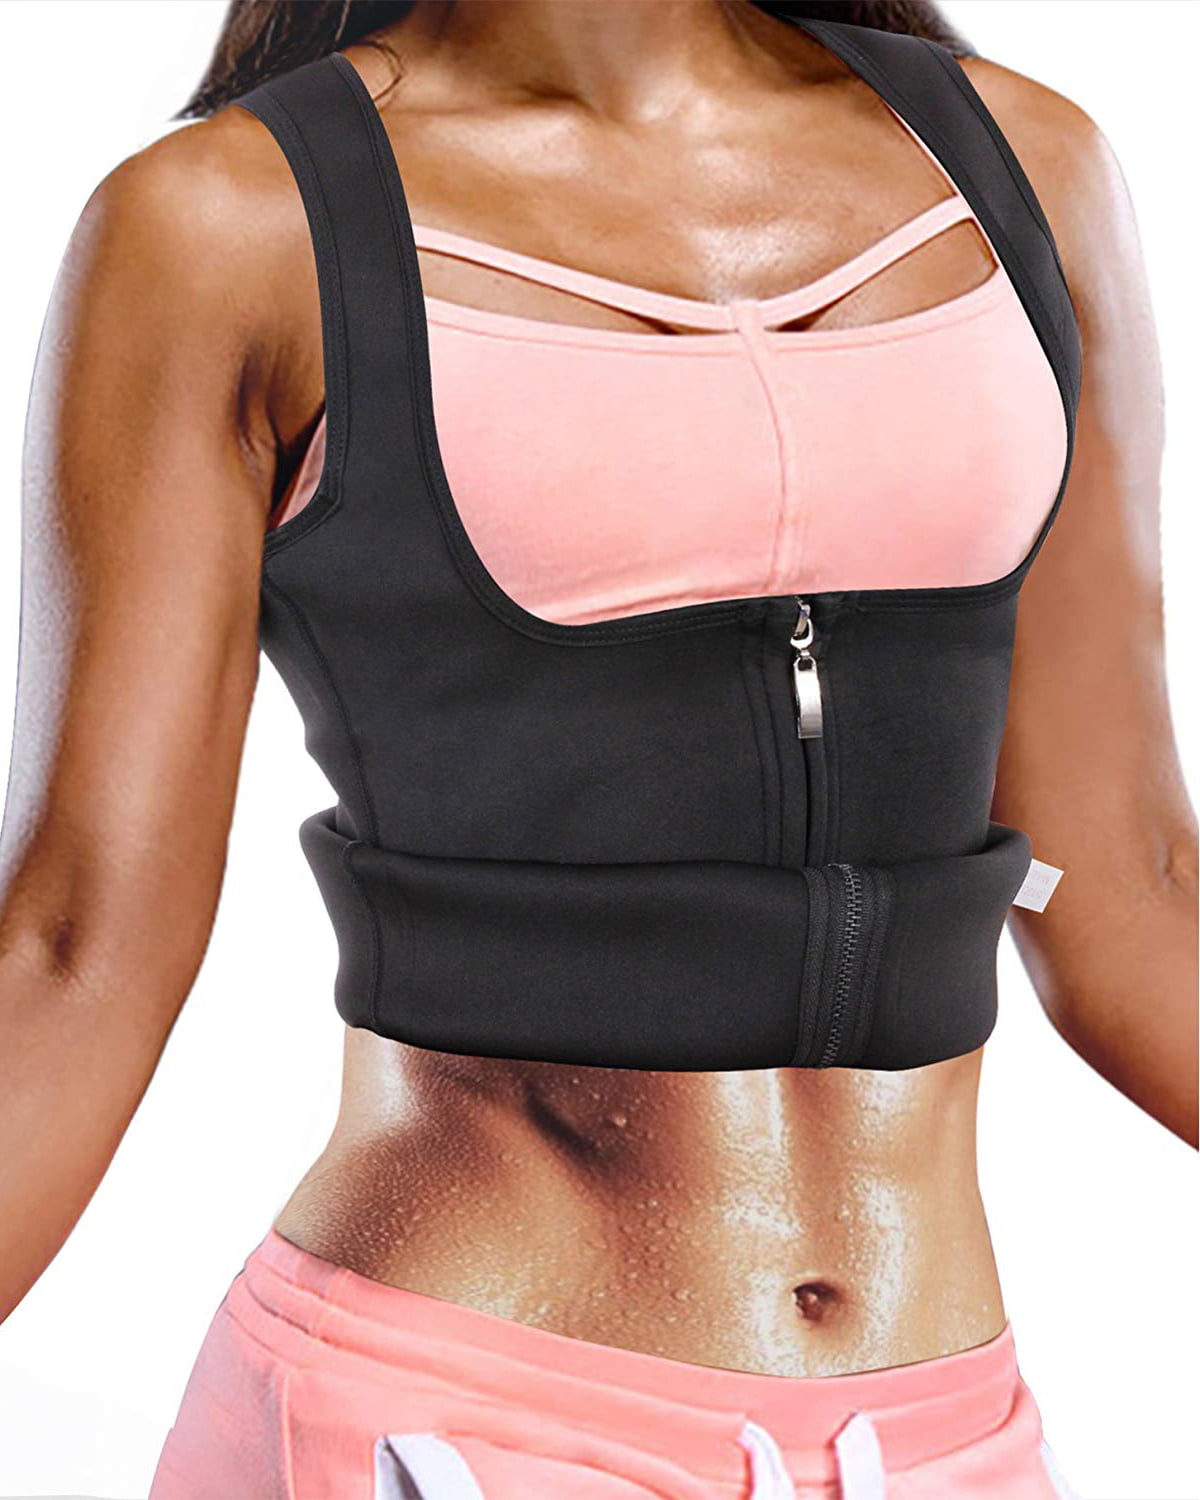 Women Neoprene Sauna Vest Weight Loss Shirt Sweat Slim Corset Workout Body Shaper Waist Trainer with Zipper